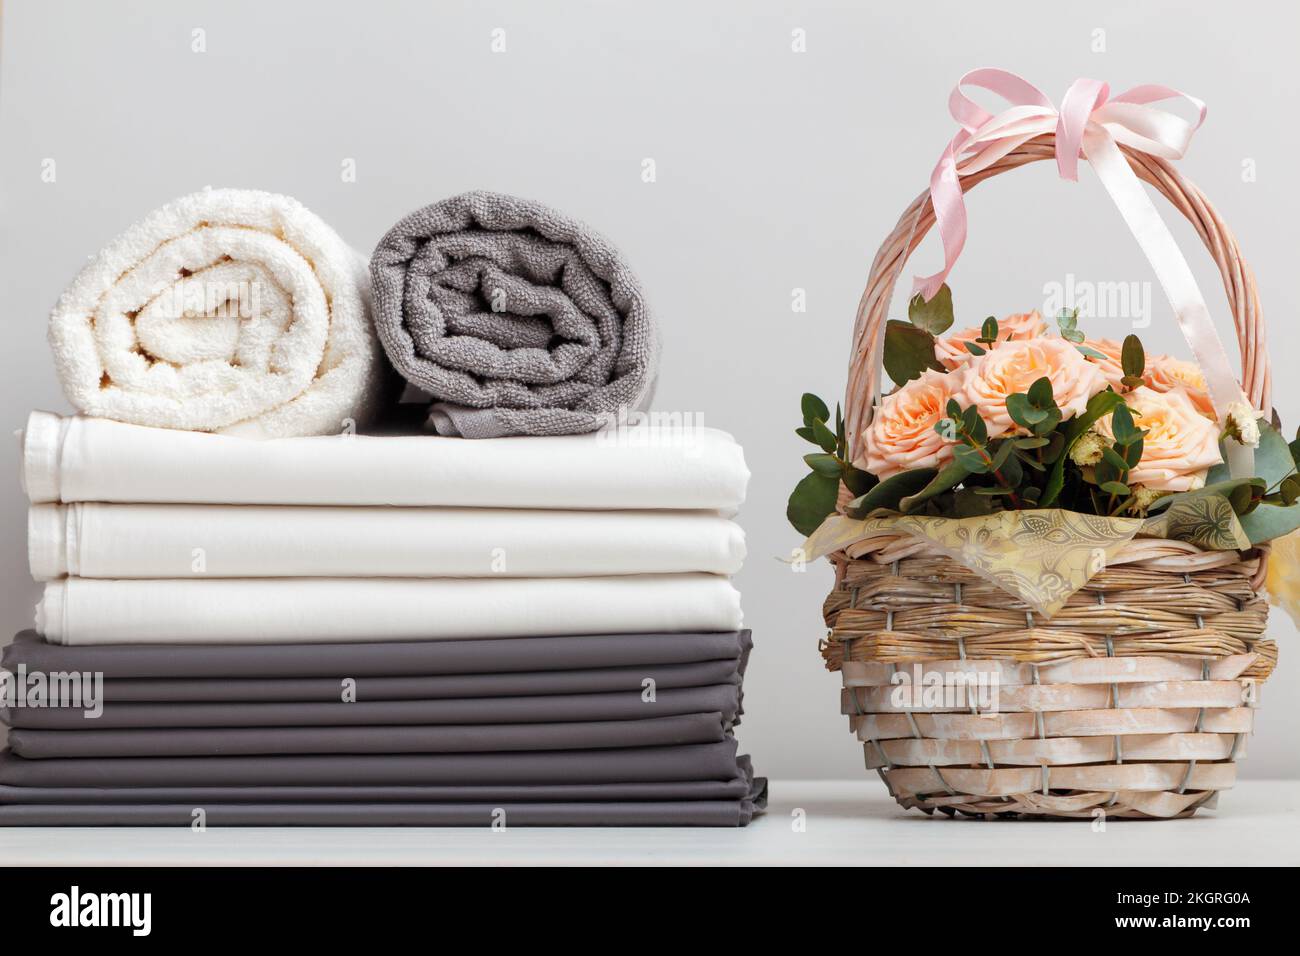 Una pila di lenzuola, rotoli di asciugamani bianchi e grigi. Cestino con rose sul tavolo. Foto Stock